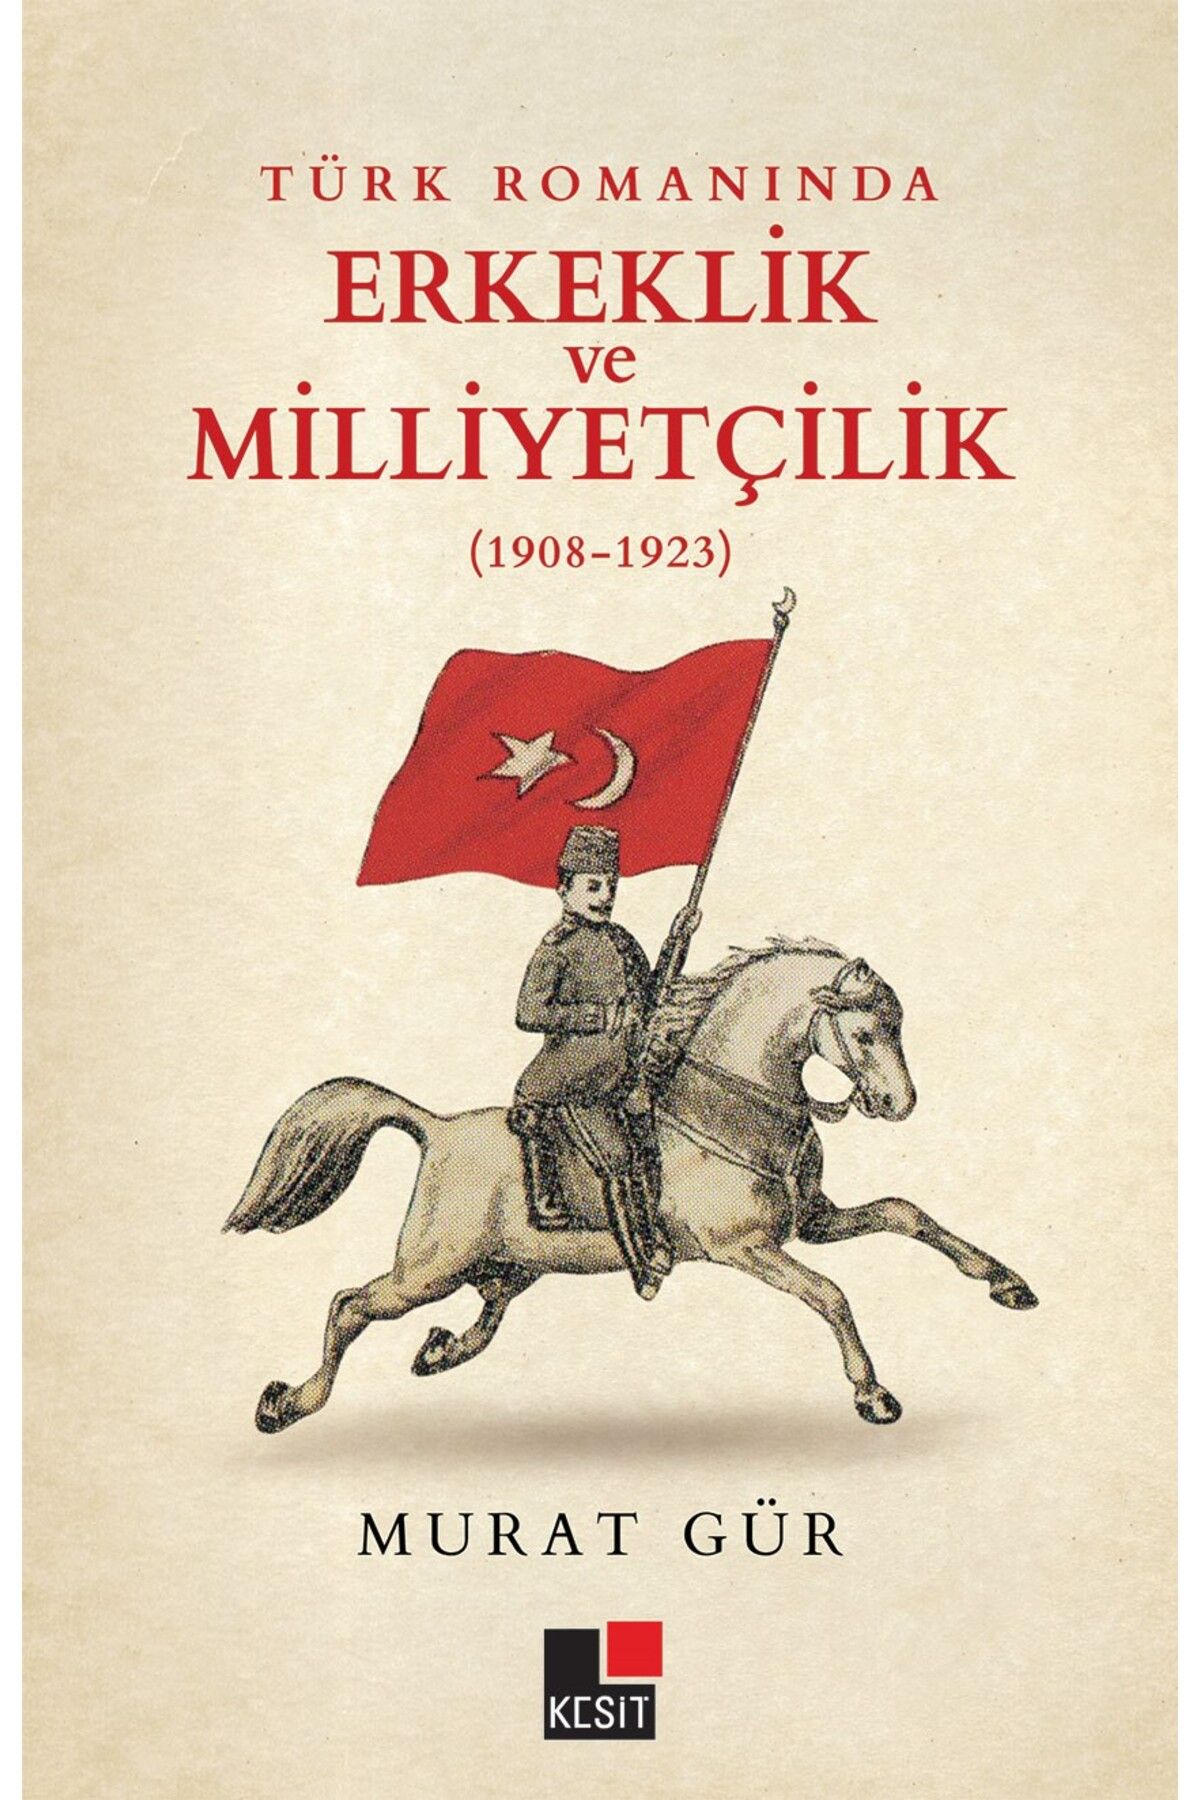 Kesit Yayınları Türk Romanında Erkeklik ve Milliyetçilik (1908-1923)